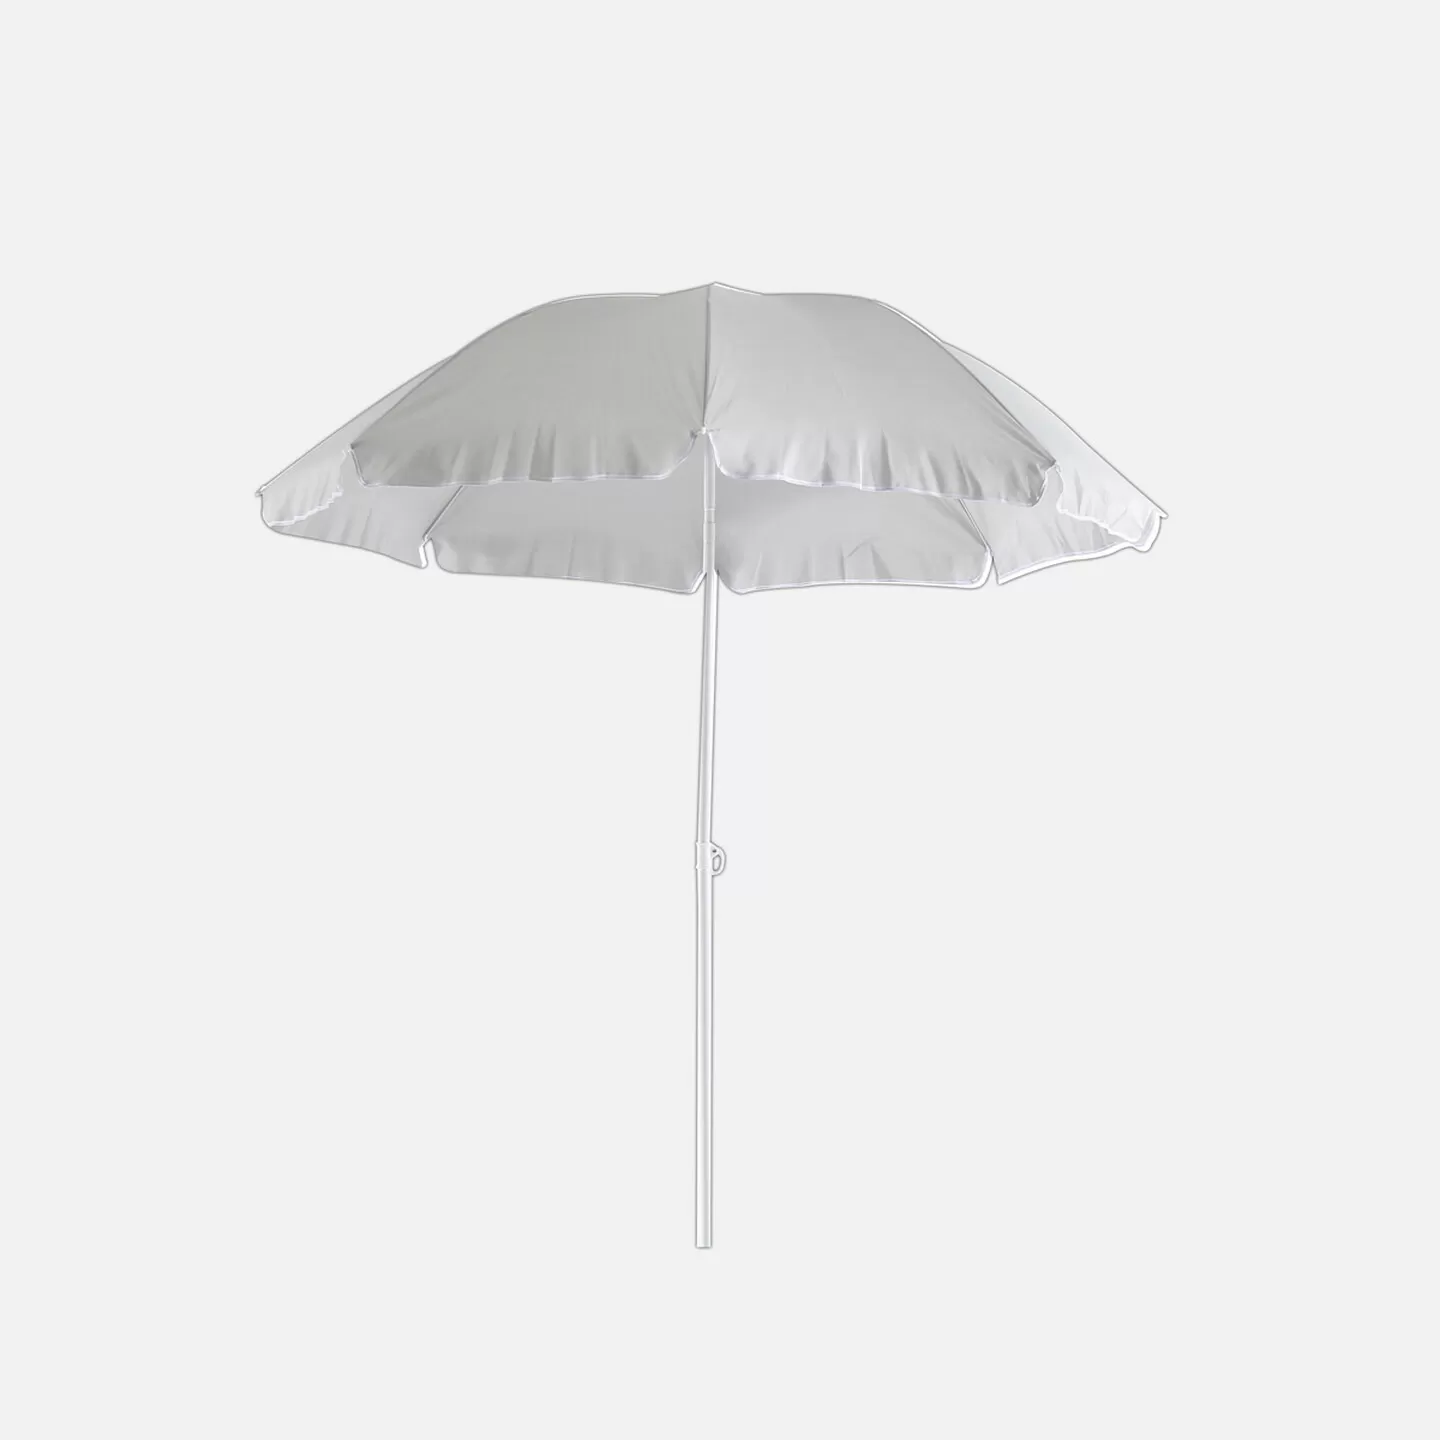 Sunfun - Sunfun Provence II Şemsiye Açık Gri 200 cm